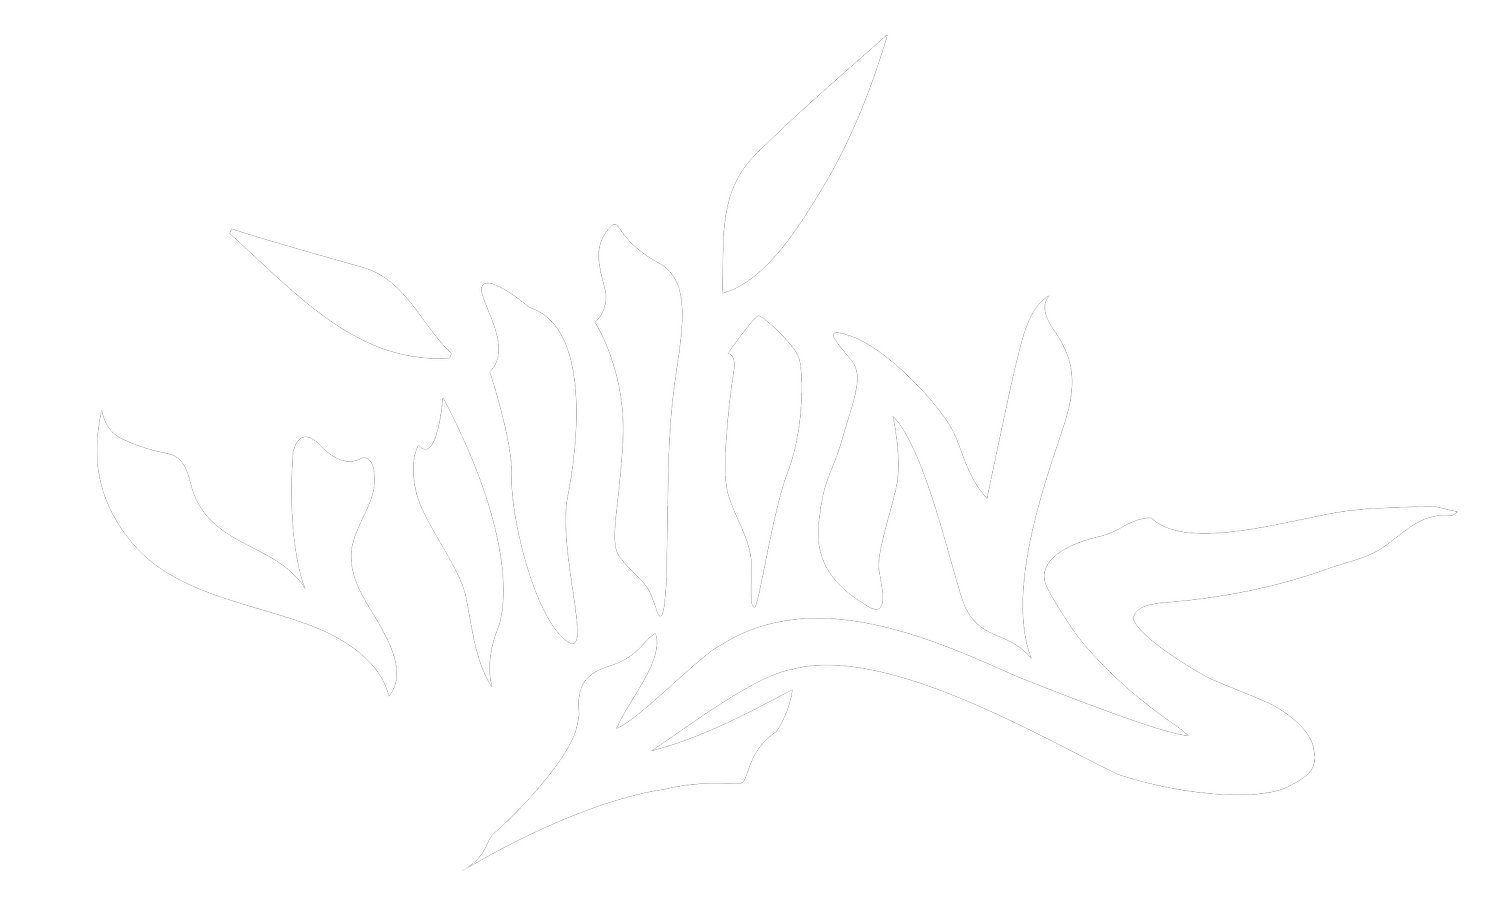 Villins Official Band Website